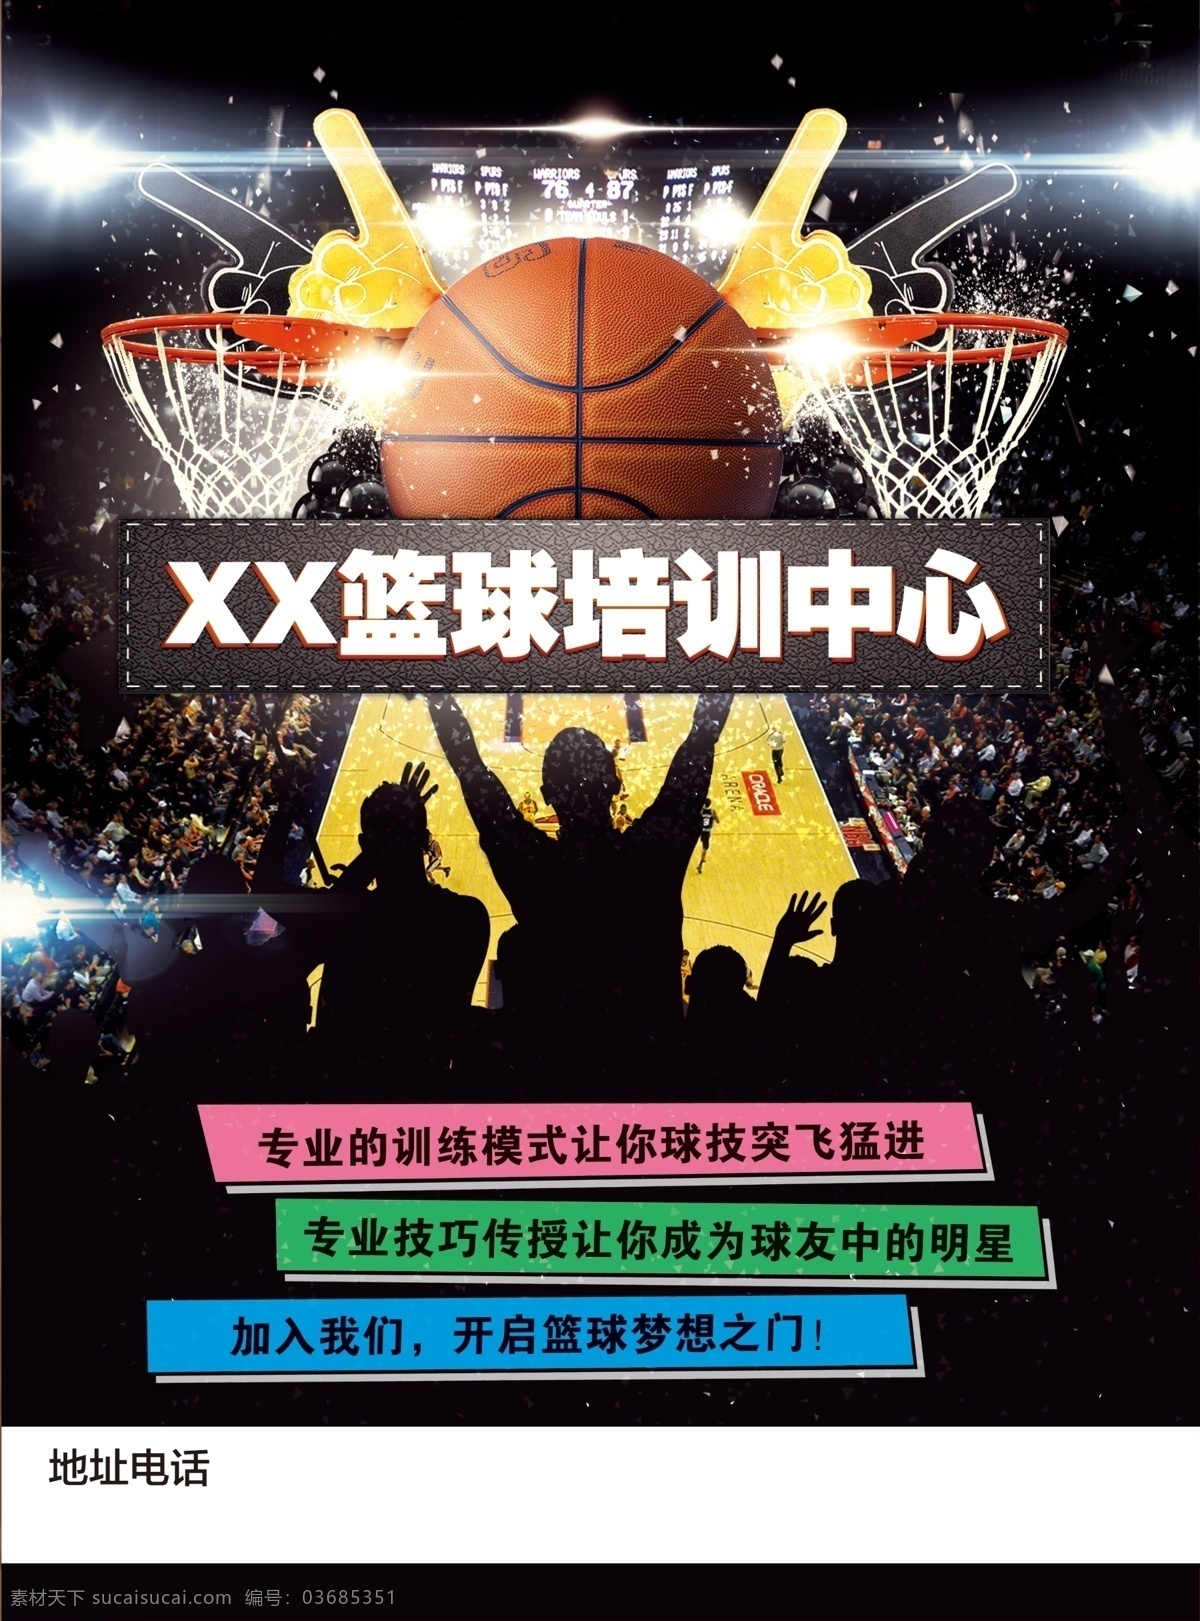 篮球培训招生 篮球培训dm 篮球培训单页 篮球宣传单 篮球训练 篮球招生 dm